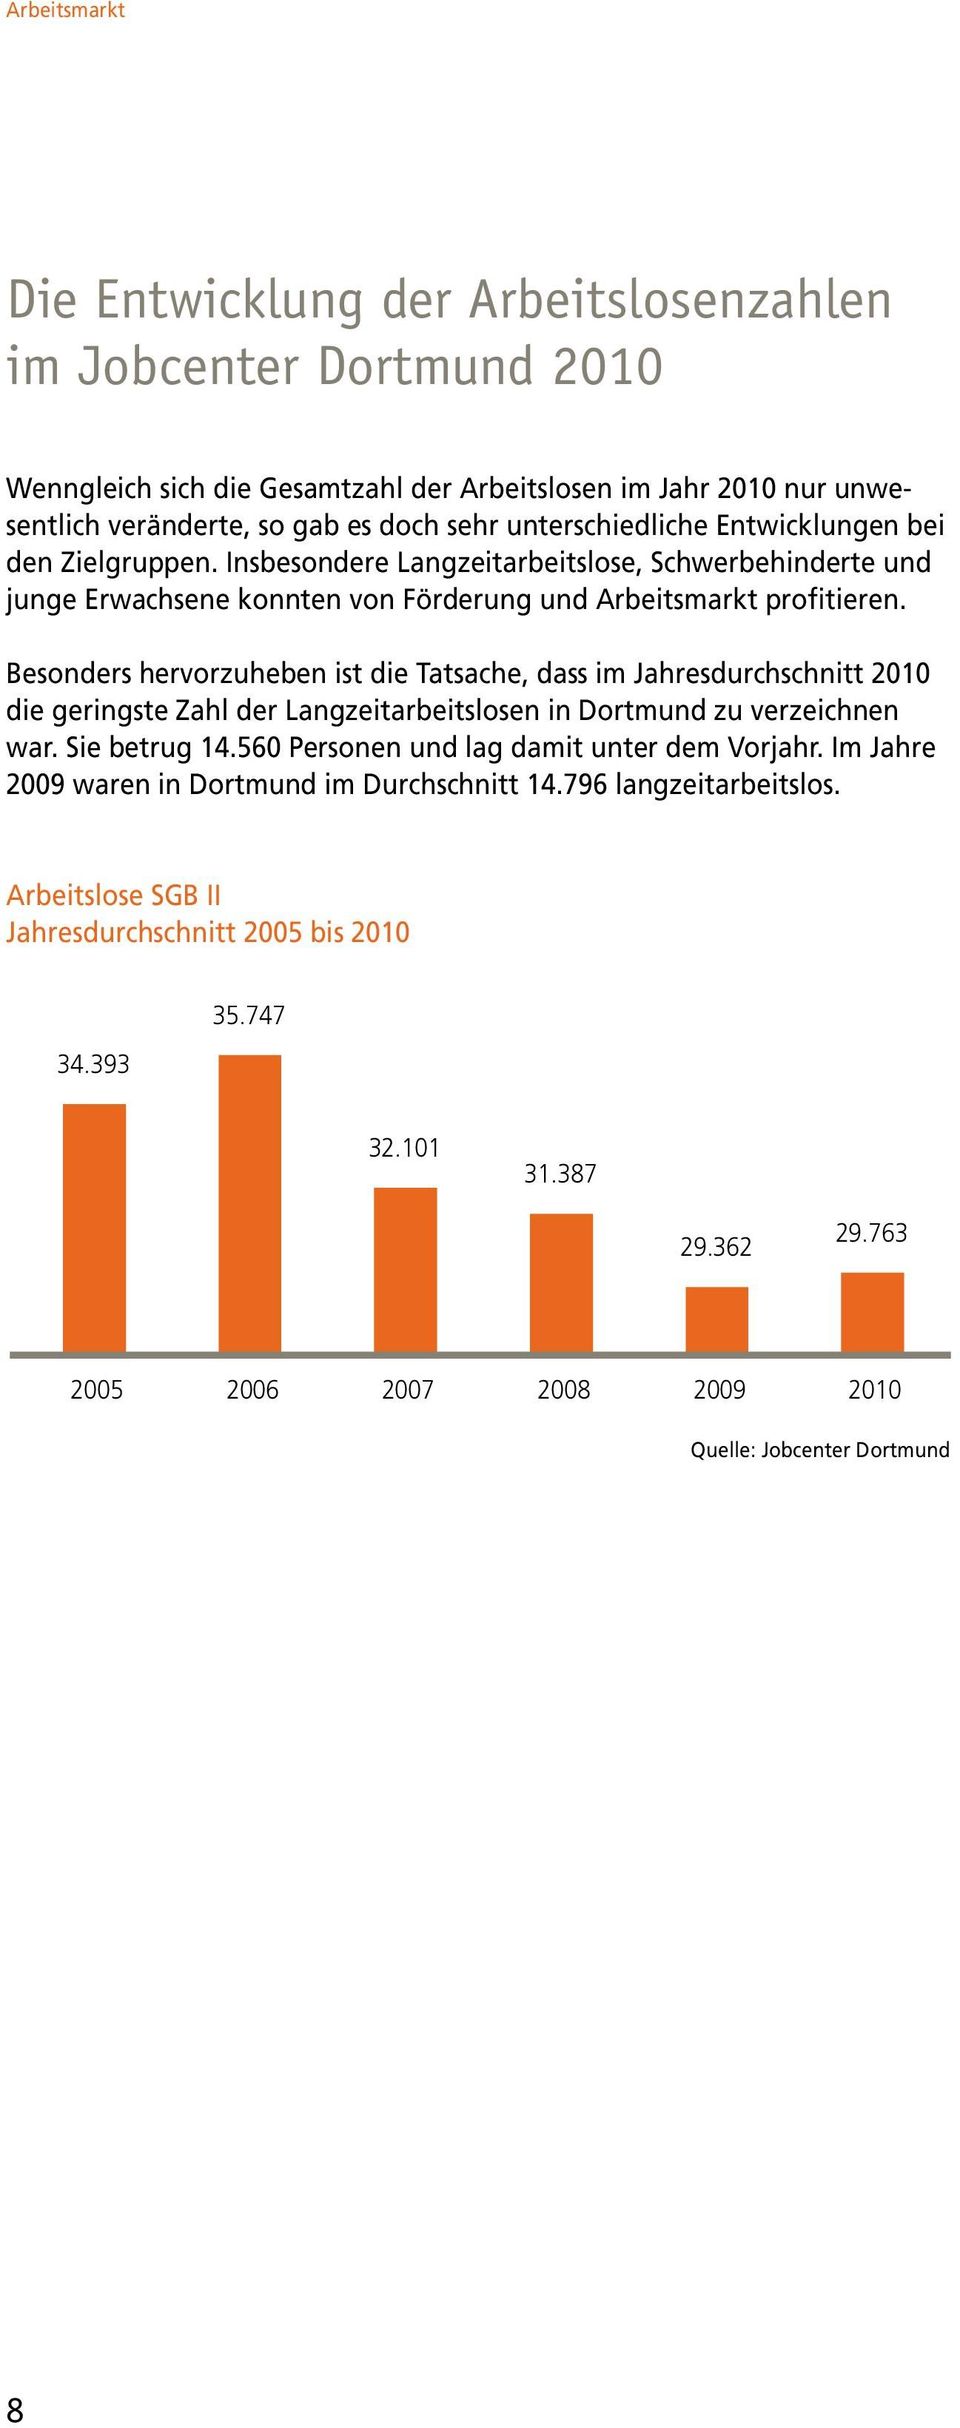 Besonders hervorzuheben ist die Tatsache, dass im Jahresdurchschnitt 2010 die geringste Zahl der Langzeitarbeitslosen in Dortmund zu verzeichnen war. Sie betrug 14.